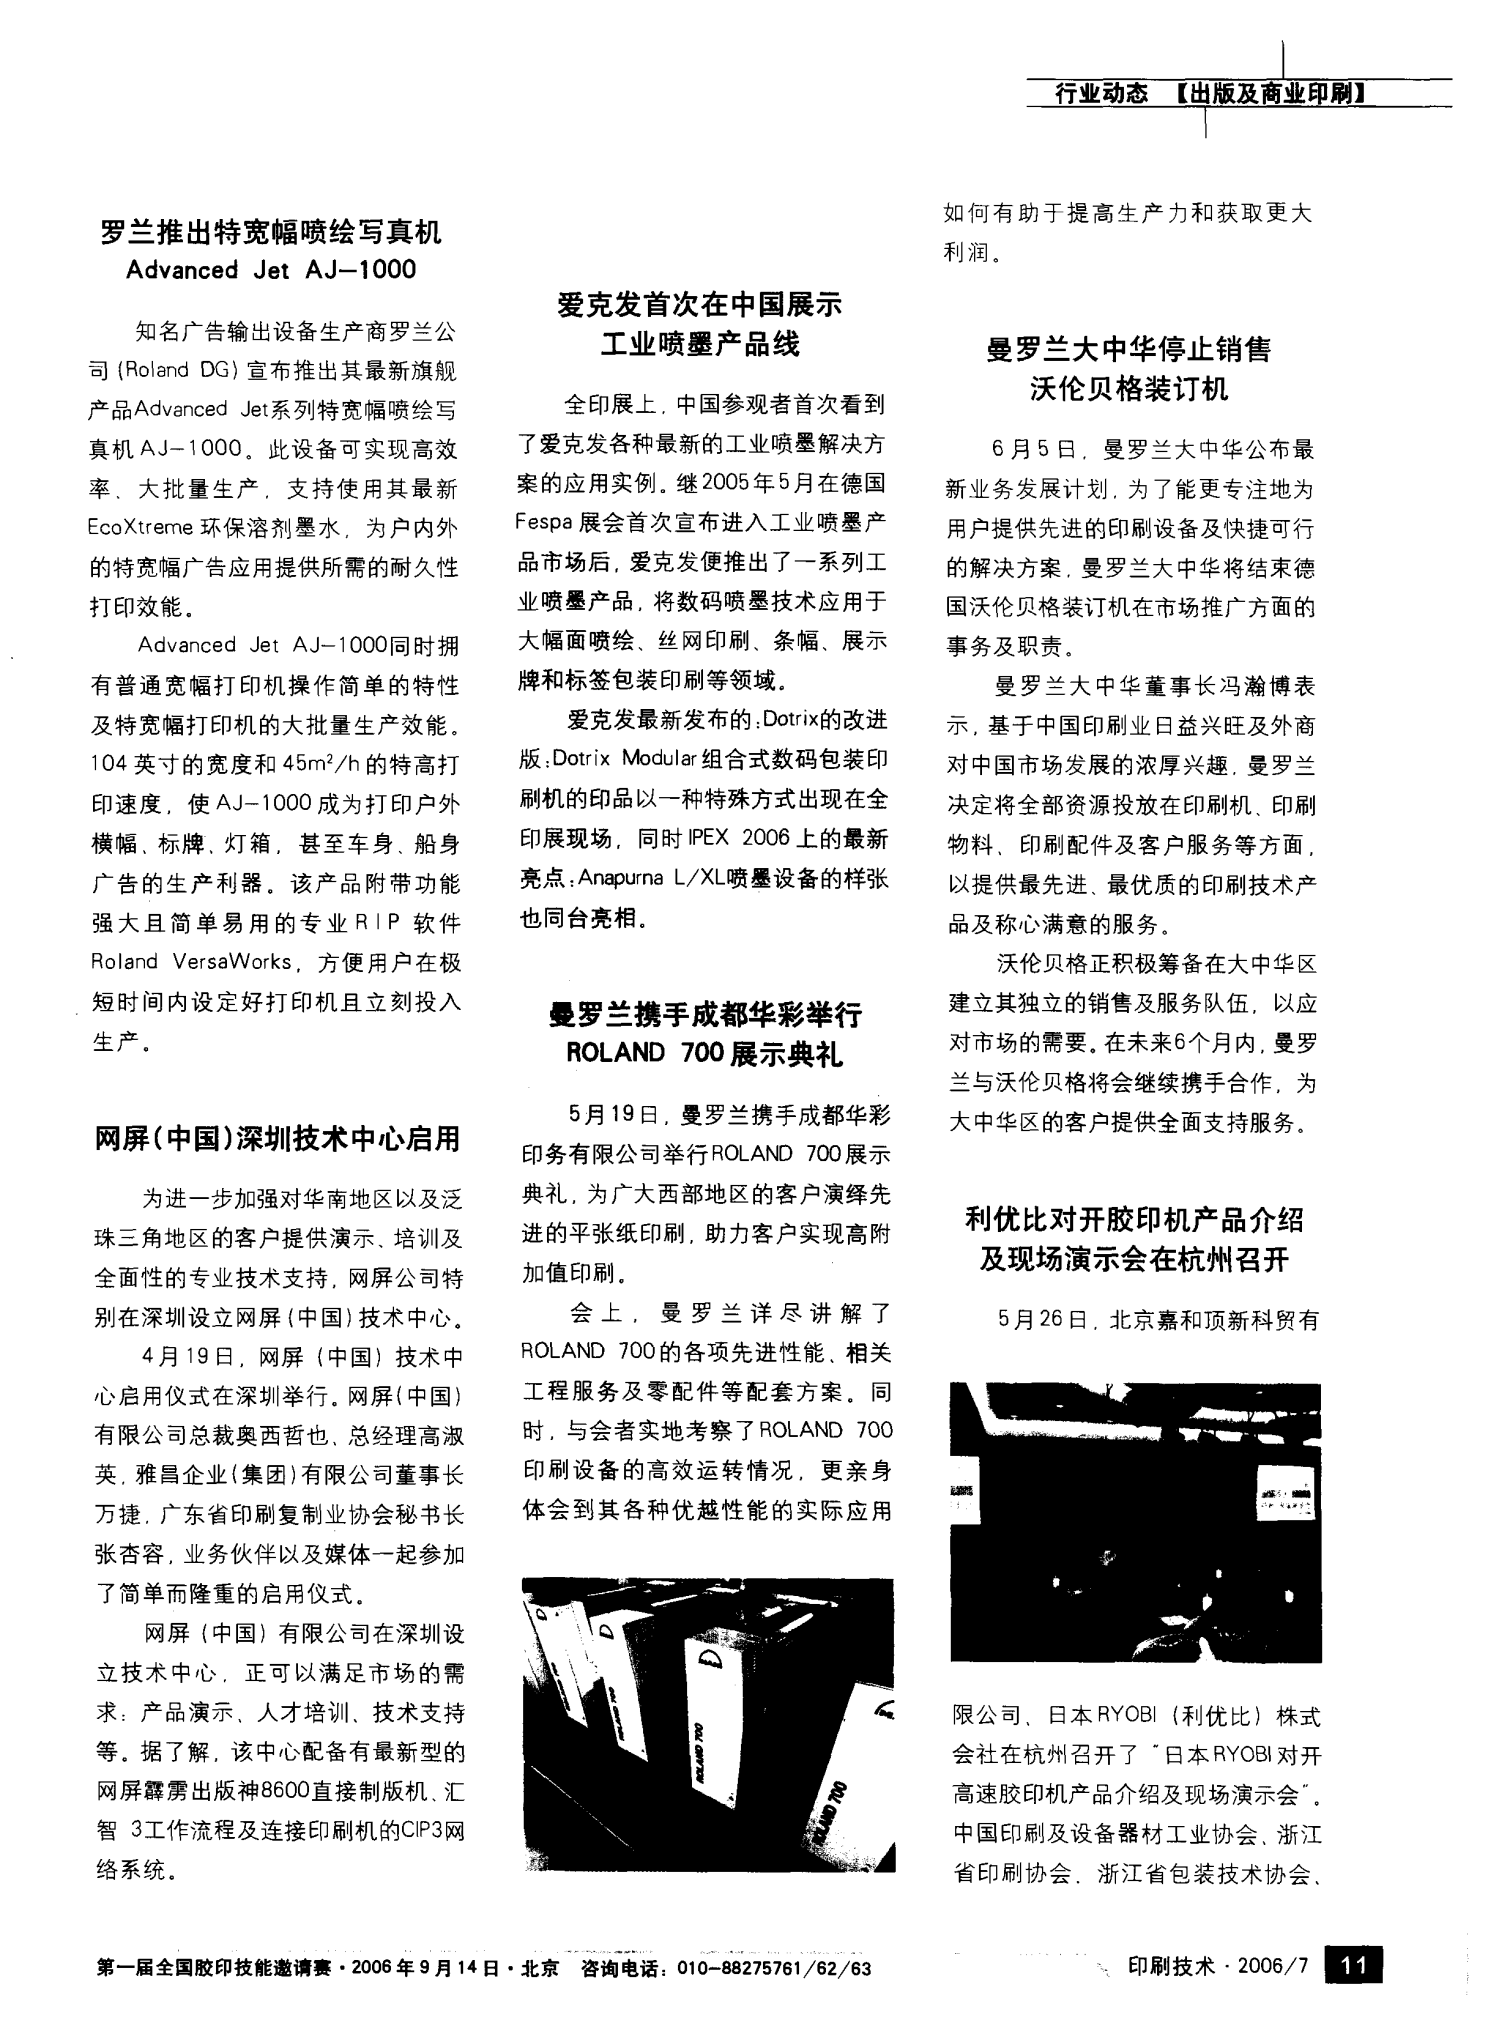 利优比对开胶印机产品介绍及现场演示会在杭州召开